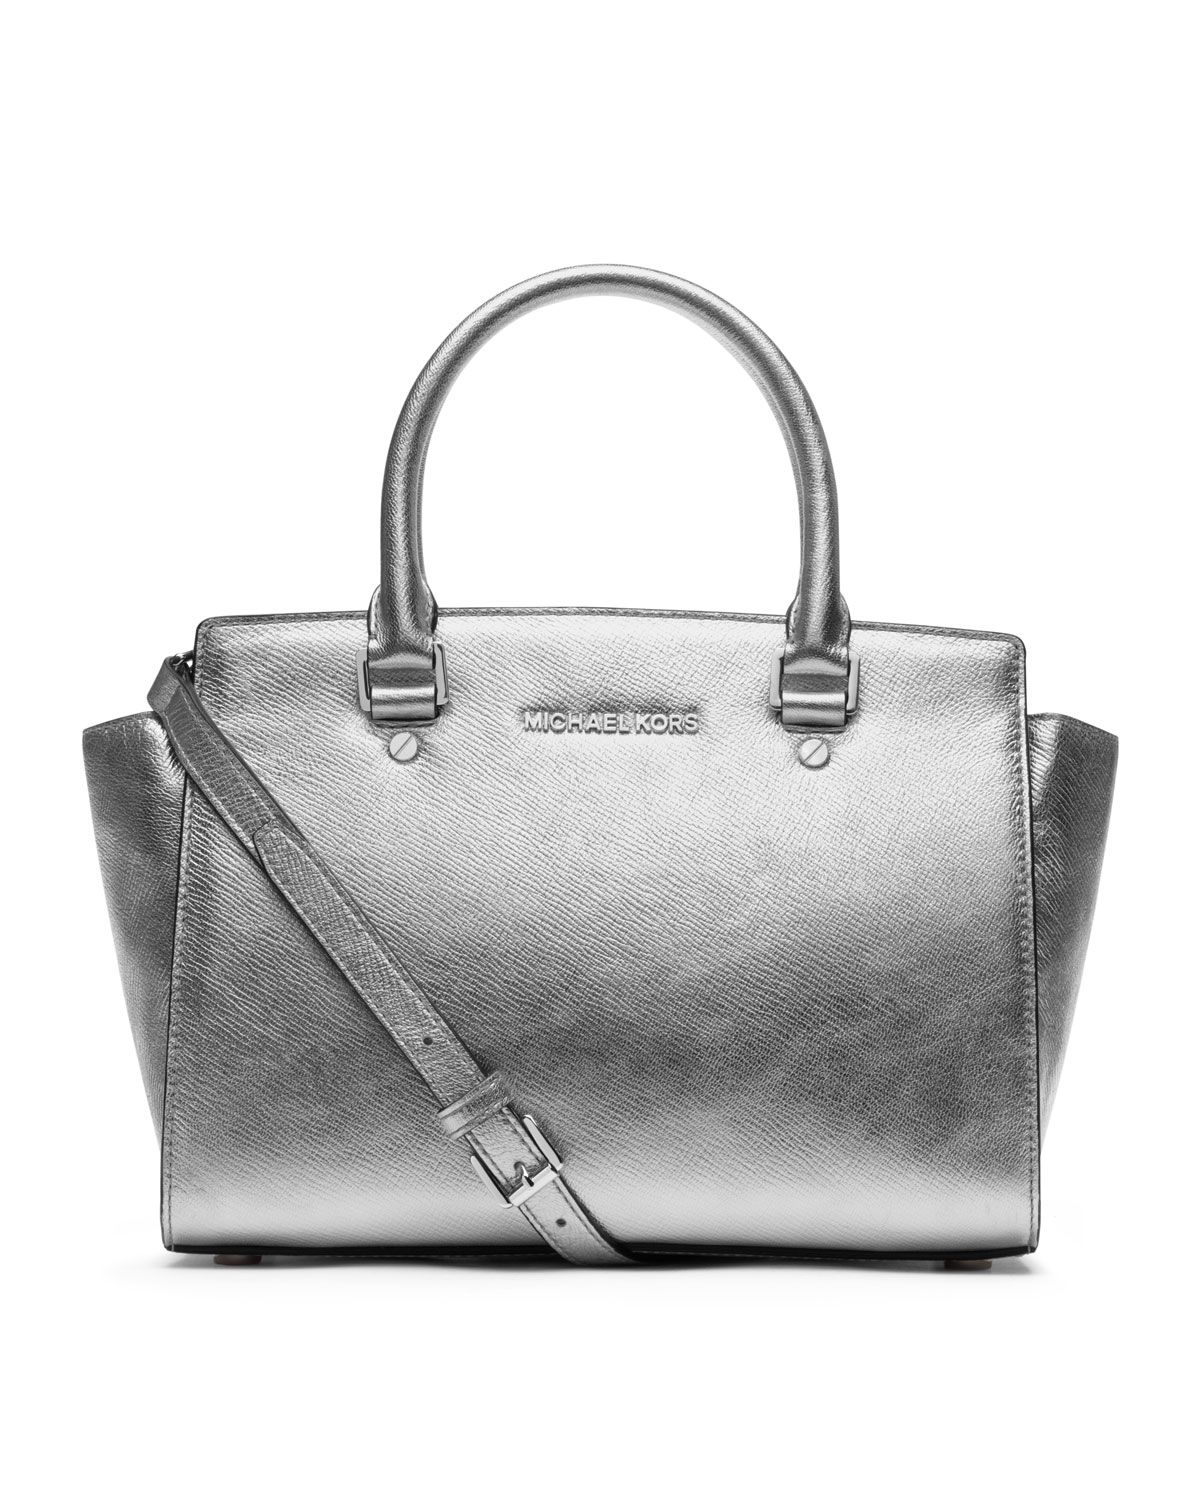 silver MK purse